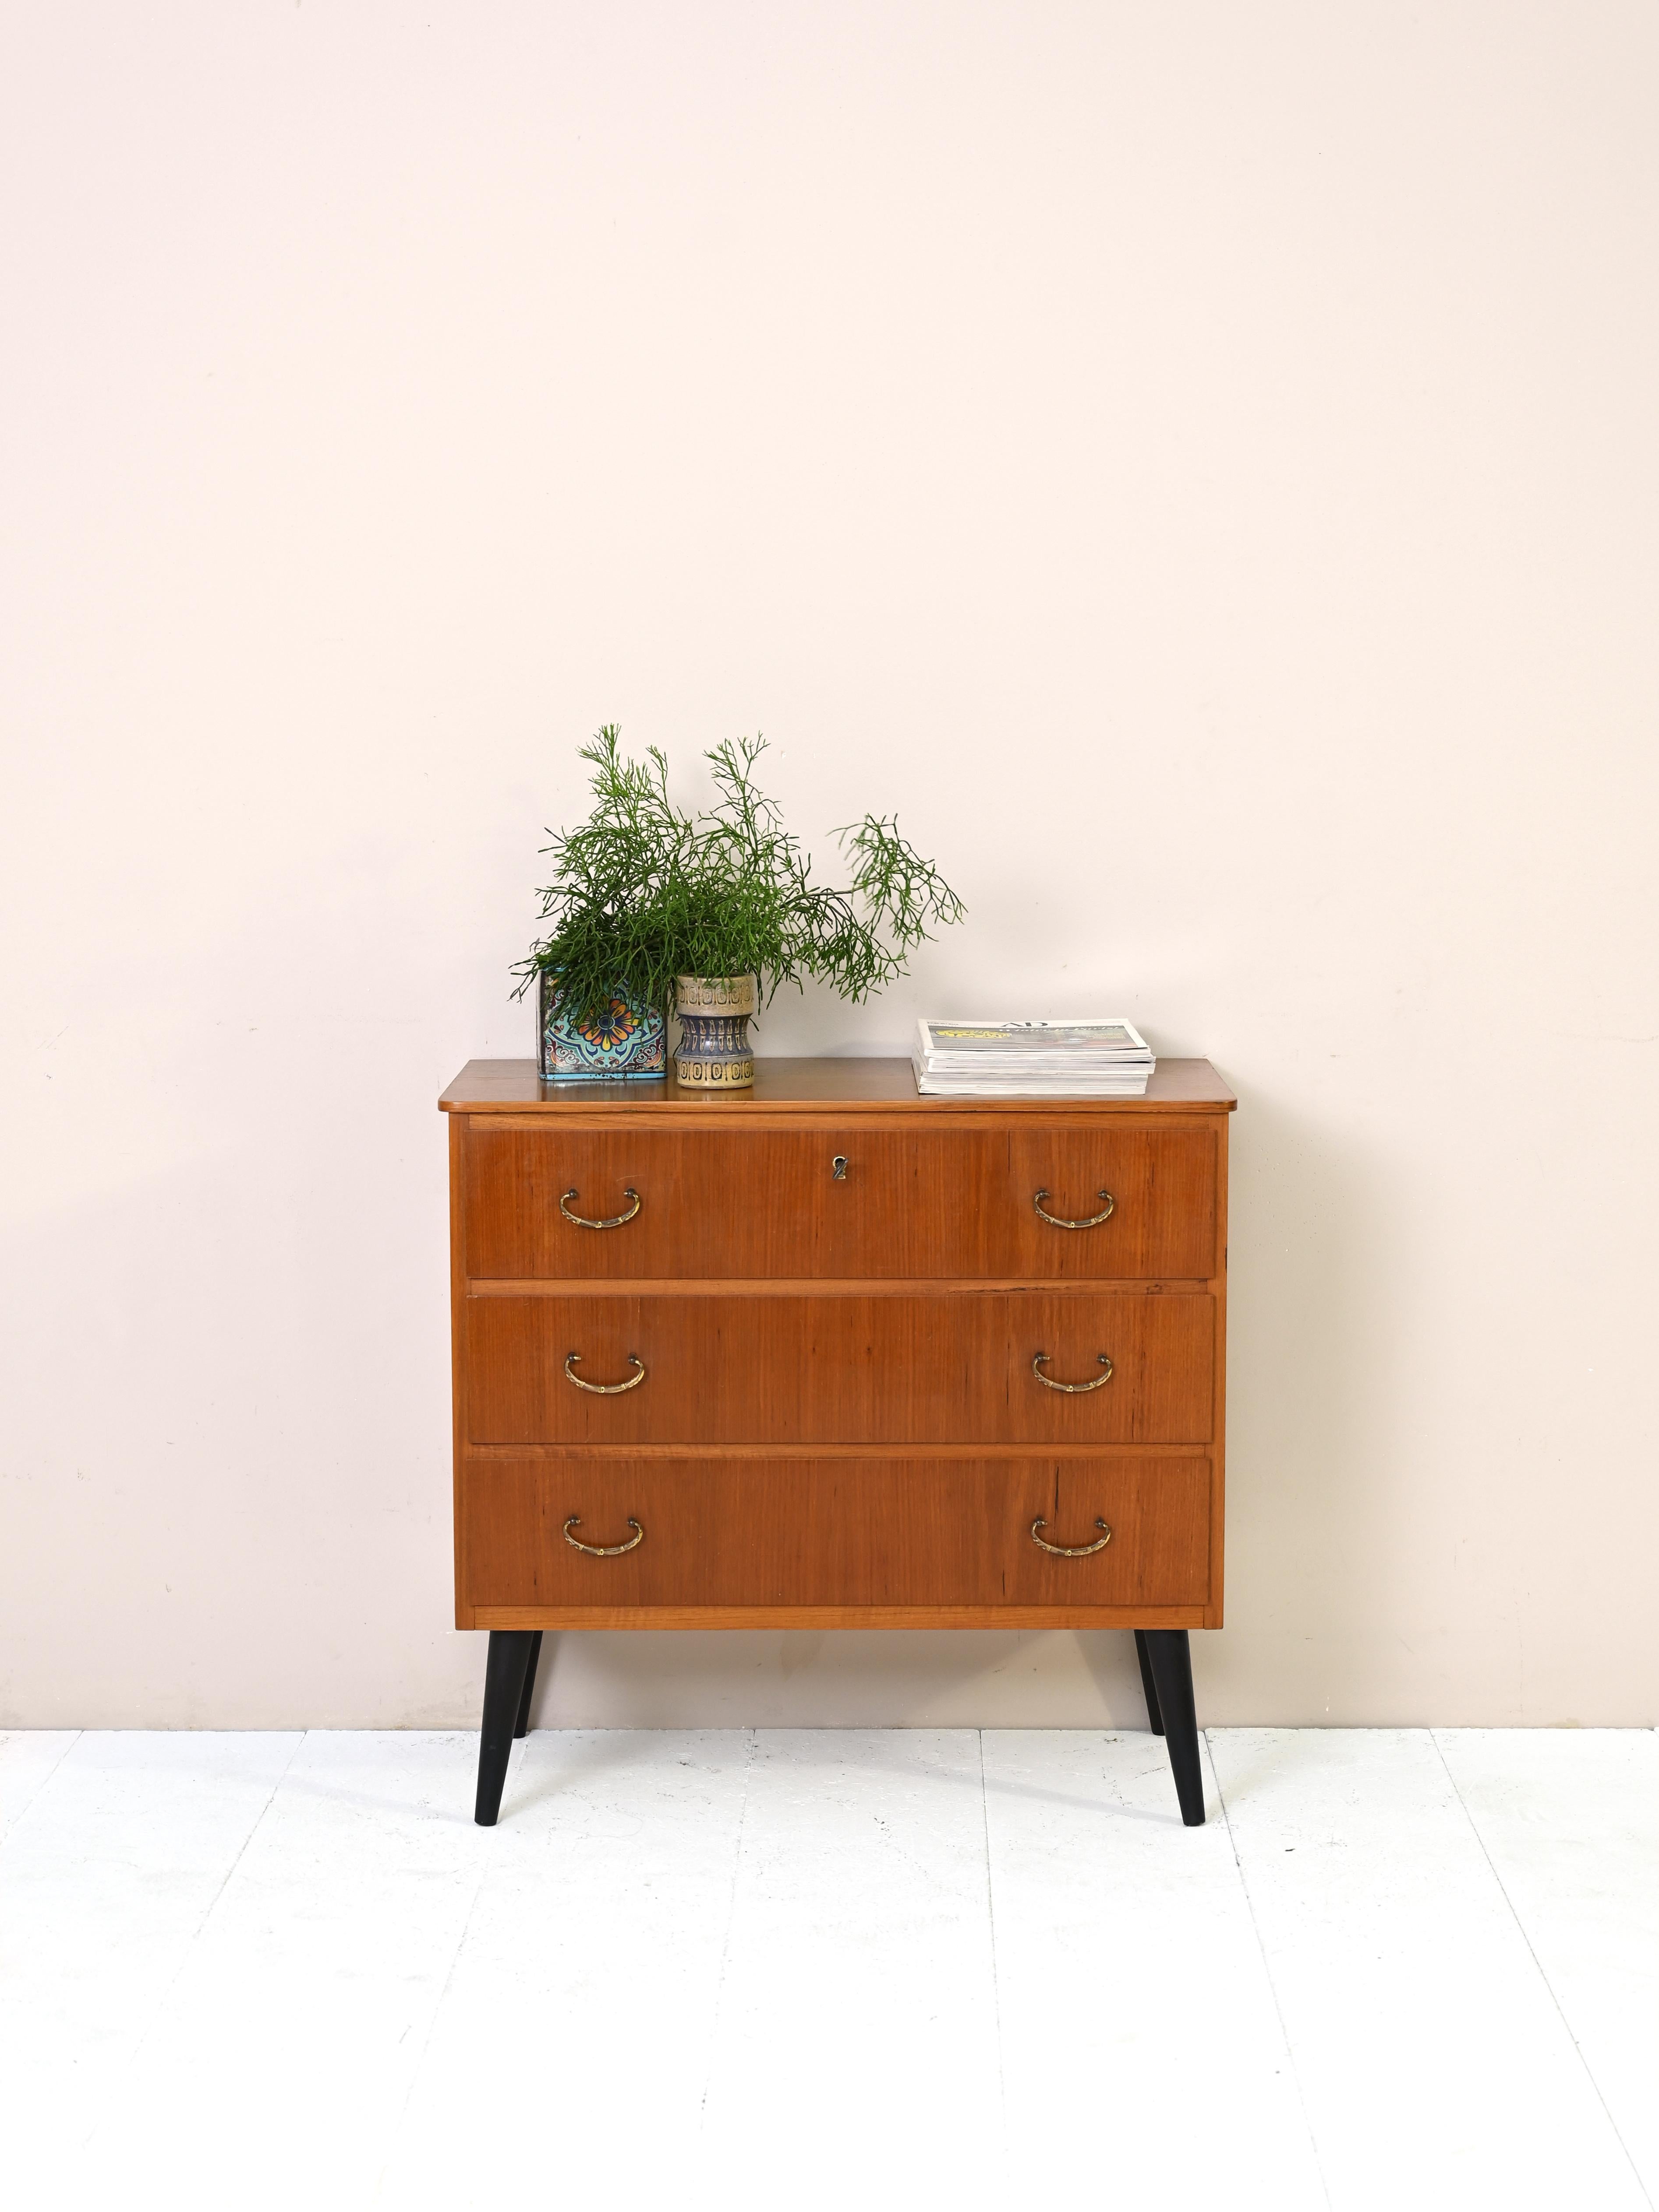 Petit meuble vintage à trois tiroirs, dont le premier est muni d'une serrure.
Agrémenté de poignées en métal doré et de pieds en bois peints en noir.
Cette commode peut être utilisée dans n'importe quelle pièce de la maison. Elle est également